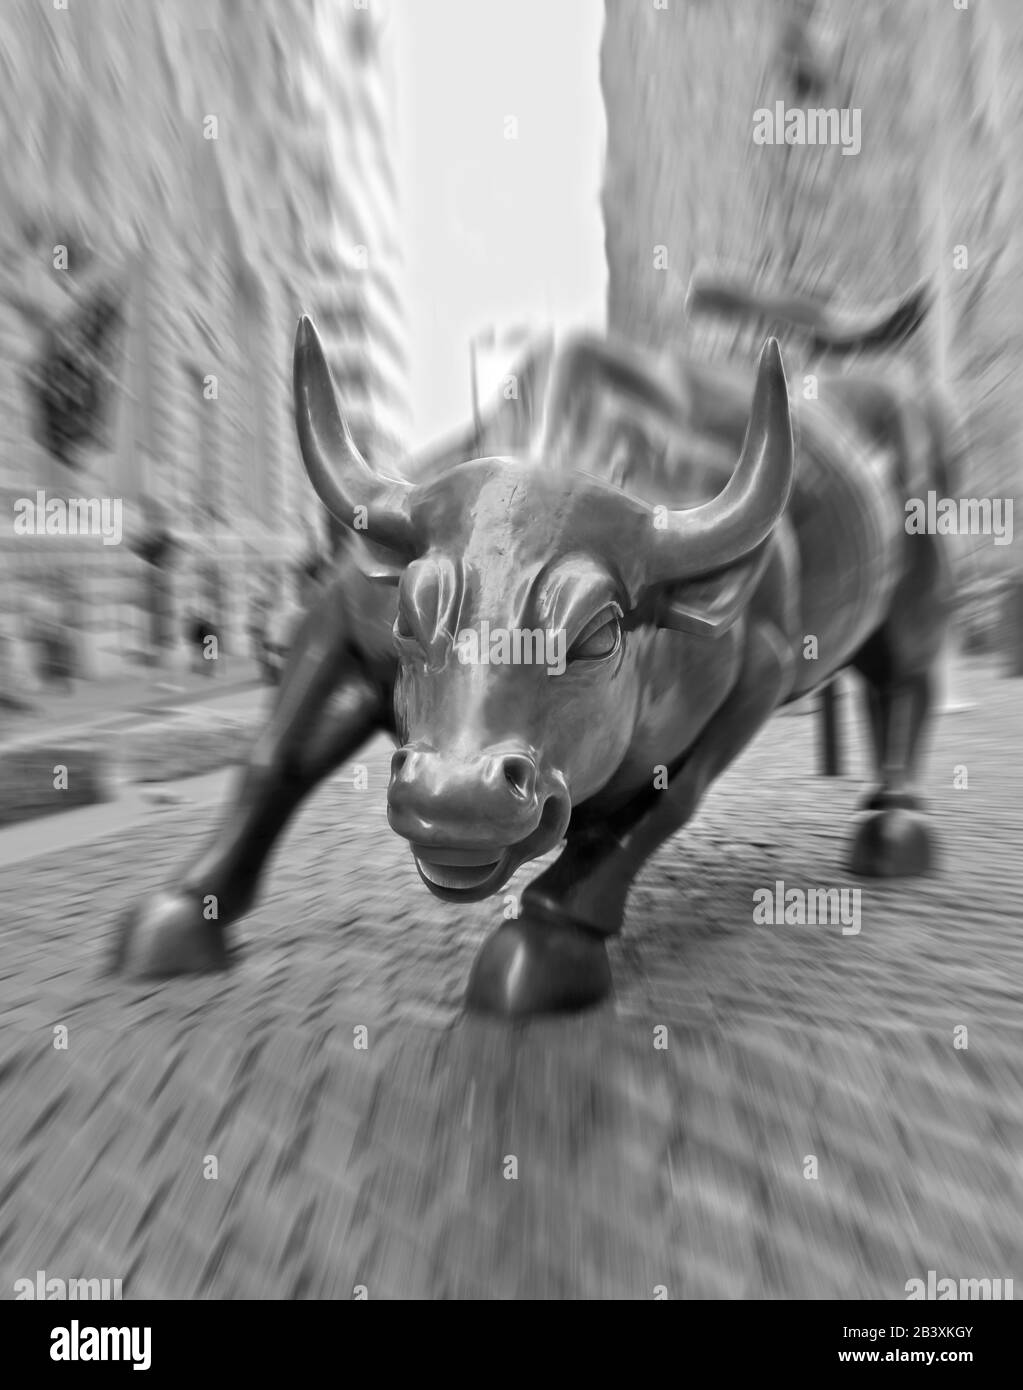 The Wall Street Bull À Lower Manhattan, New York, États-Unis. Grande sculpture en bronze d'Arturo Di Modica. Photographie avec mouvement, le visage de Bull est net Banque D'Images